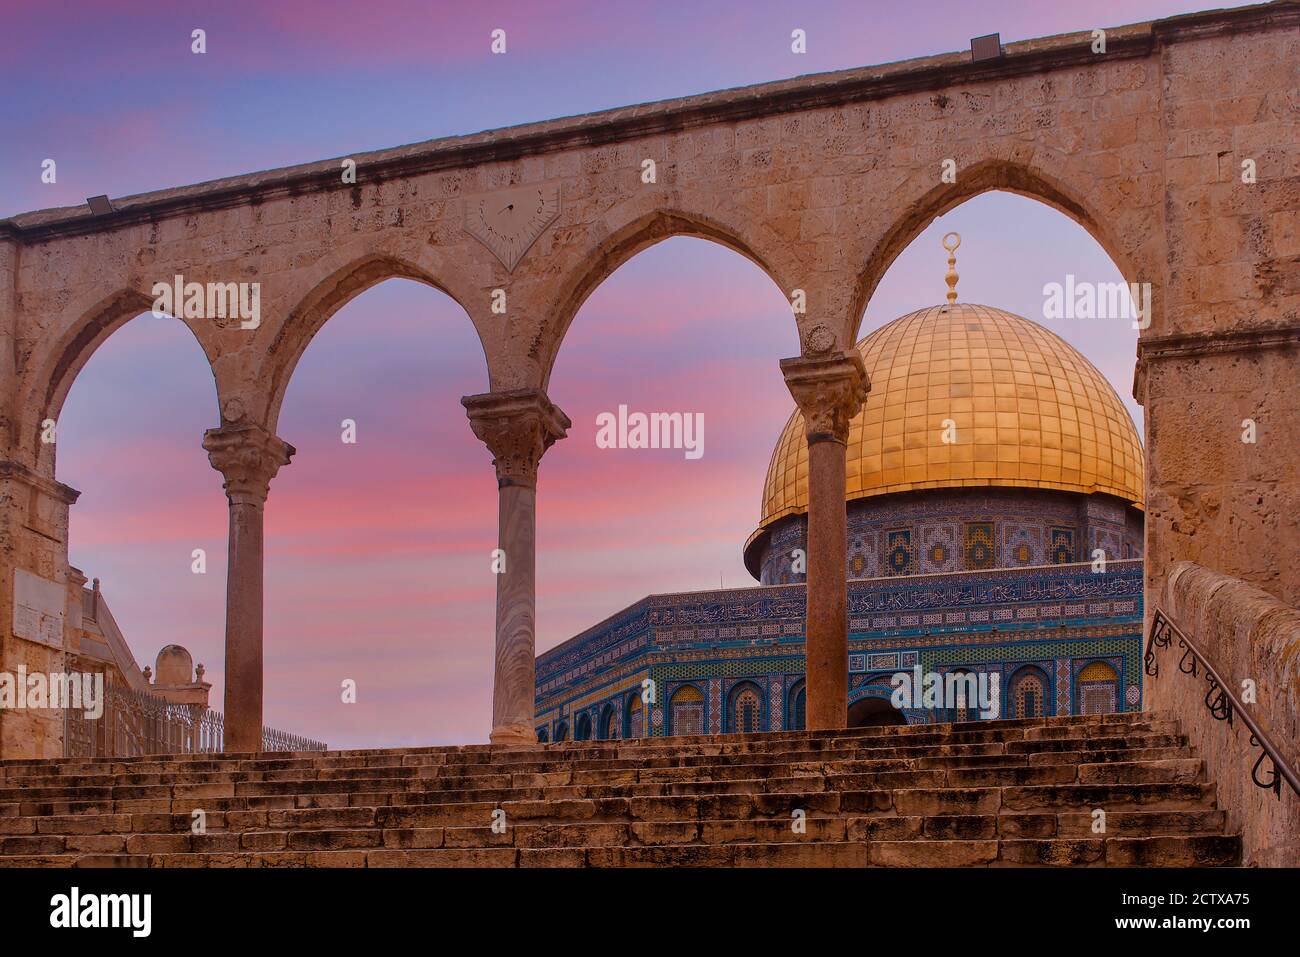 Jérusalem, Israël - mosquée Al-Aqsa, mont du temple, Jérusalem, Israël. C'est un sanctuaire islamique situé sur le mont du Temple dans la vieille ville Banque D'Images